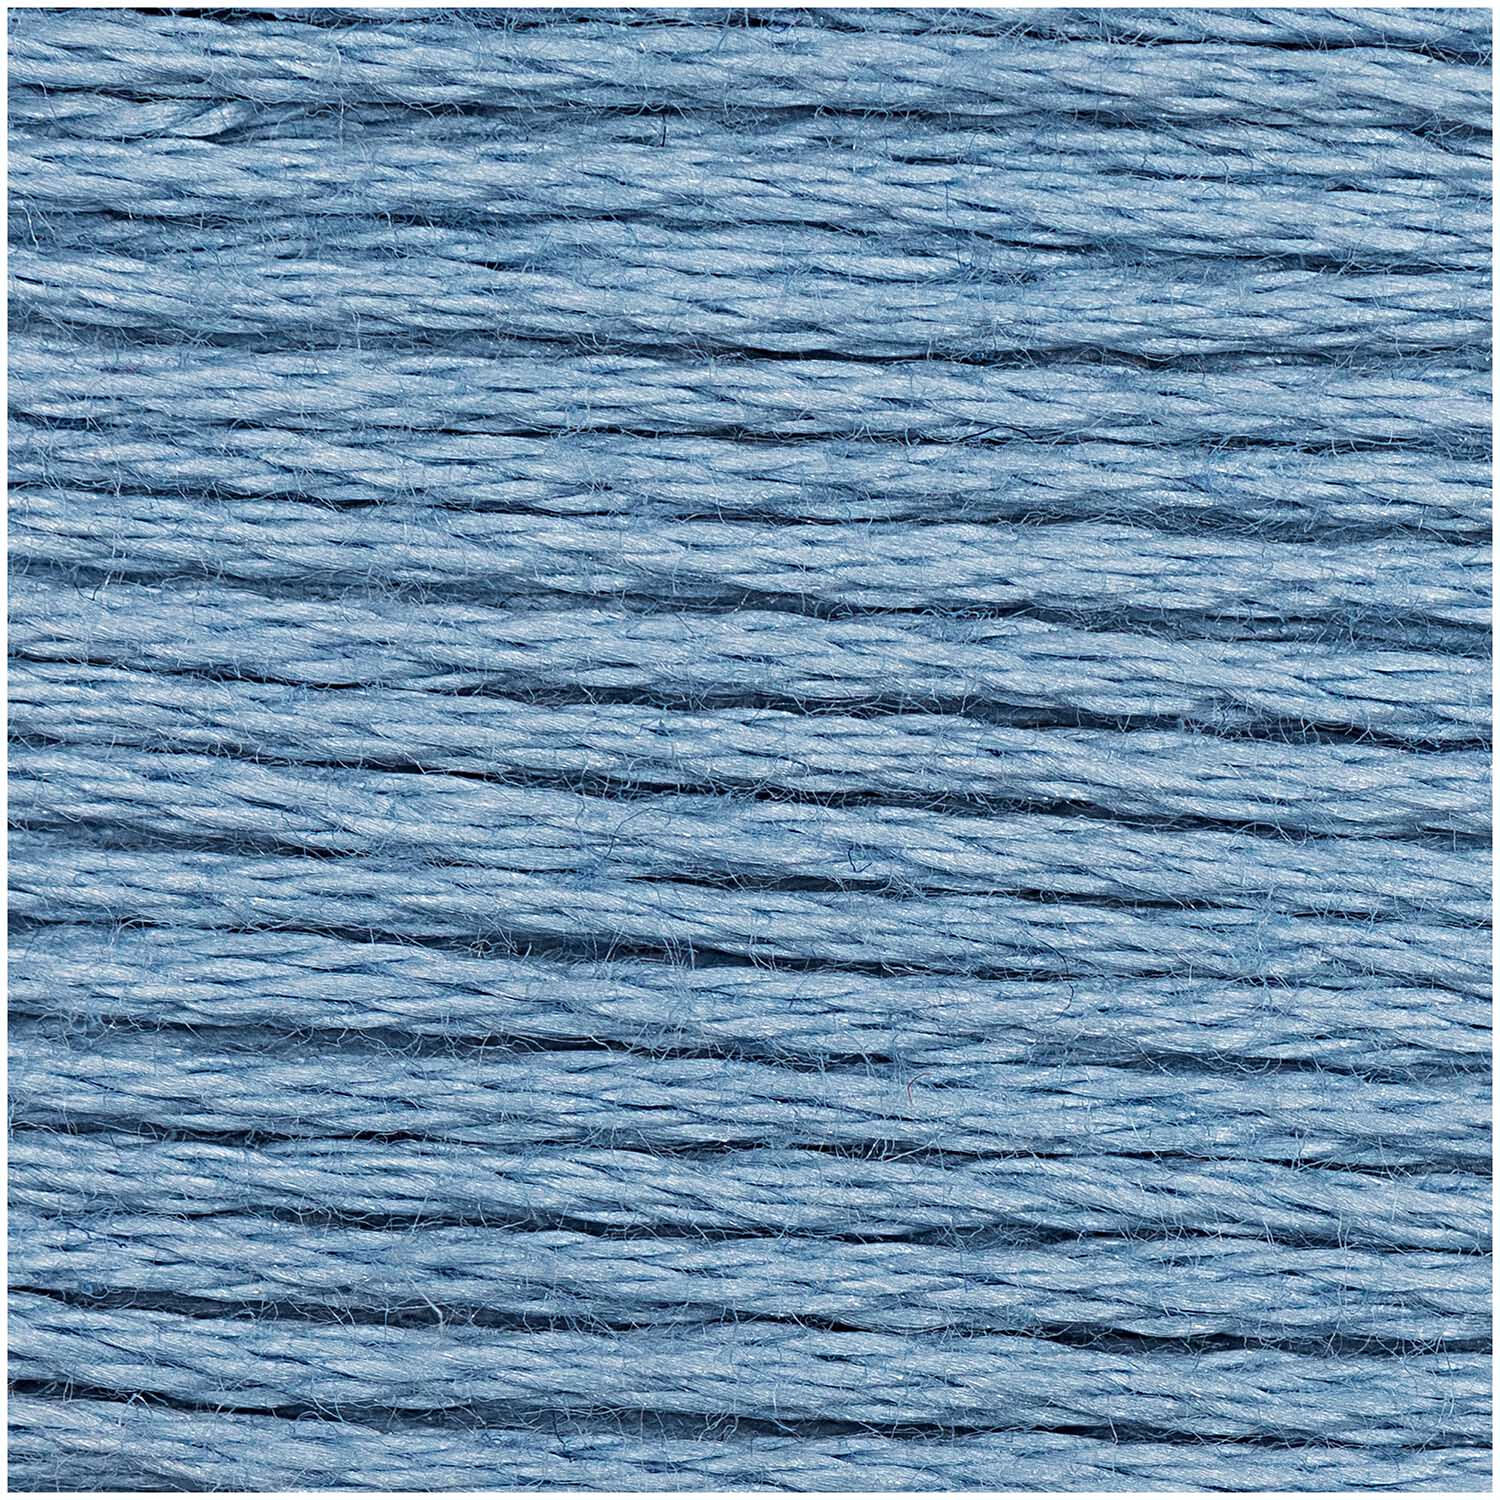 Sticktwist, 8 Meter, Farbe: Knigsblau 01 (117) Bild 2